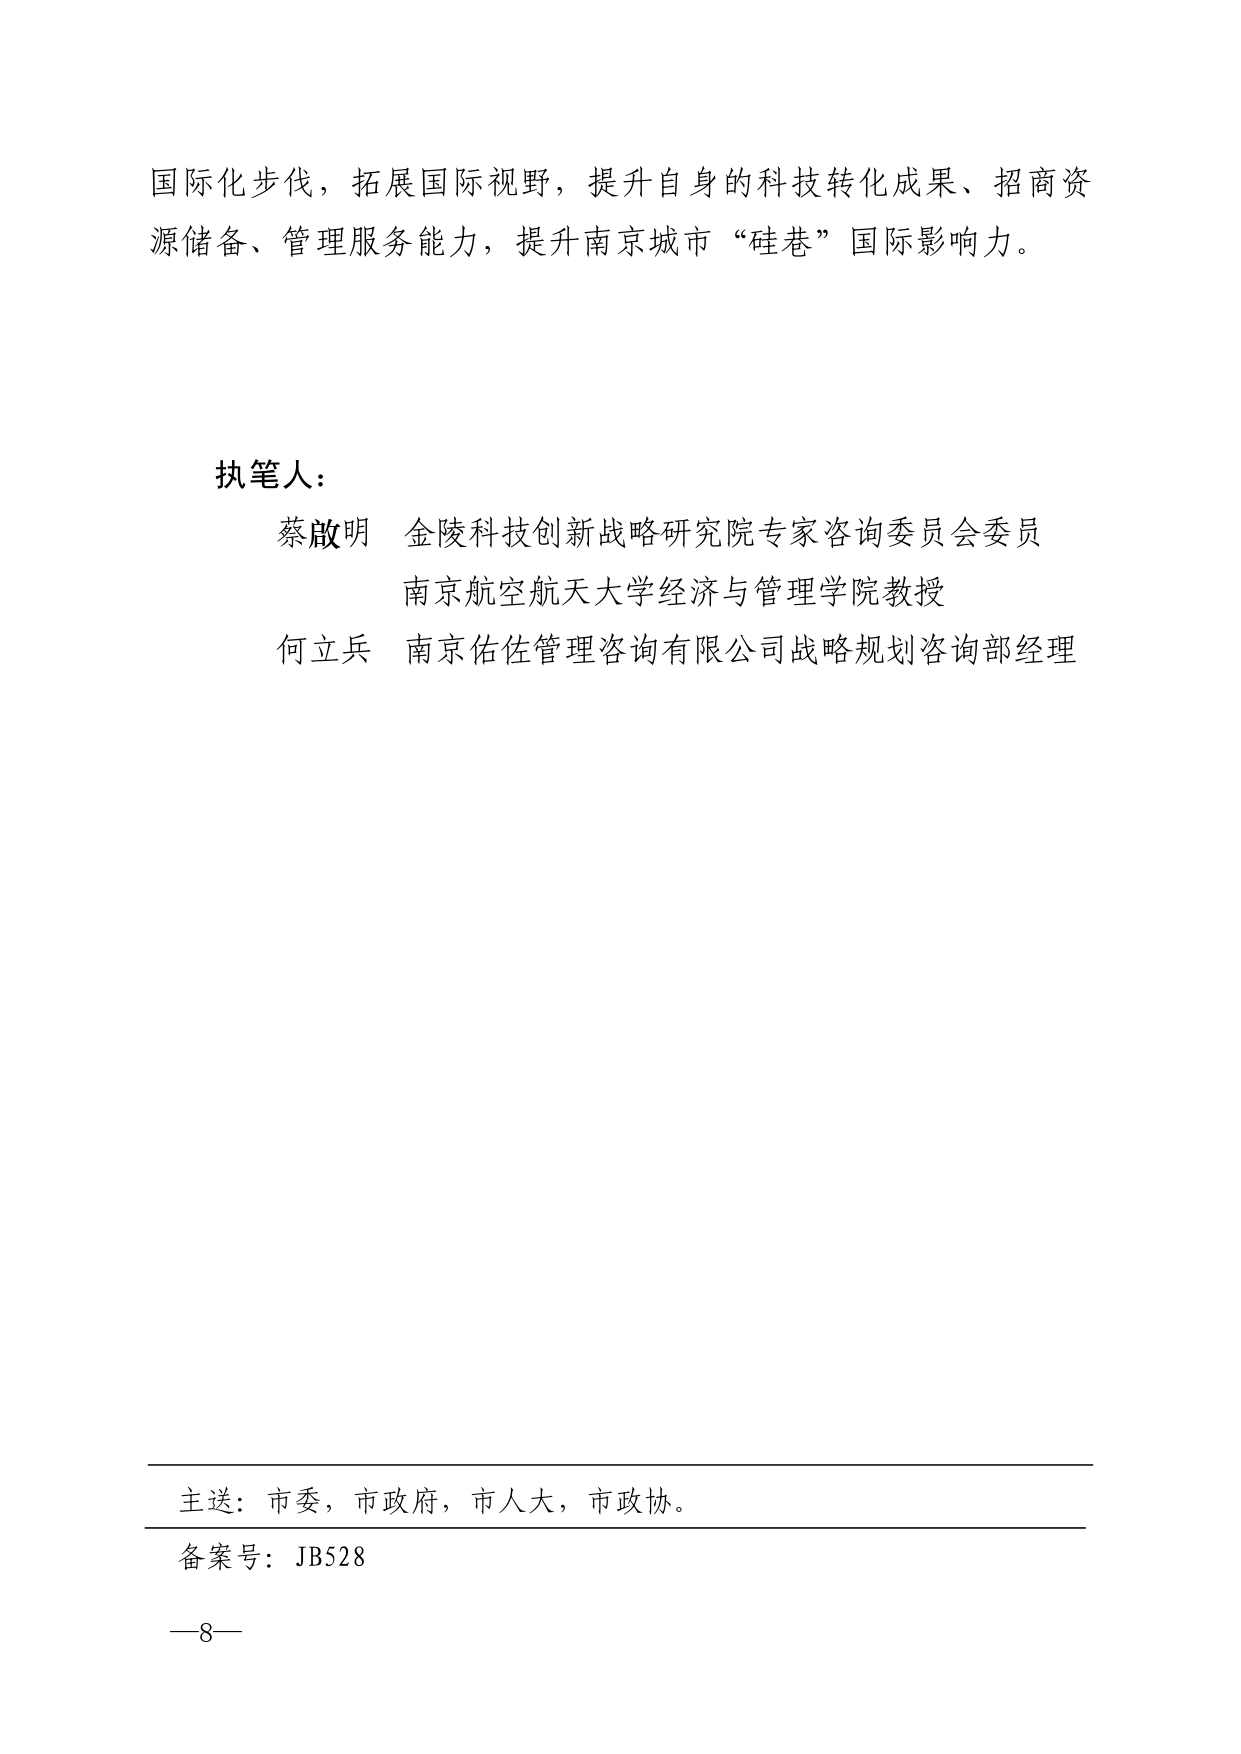 2021年第6期（关于南京城市硅巷发展的若干建议）-印刷版_page-0008.jpg